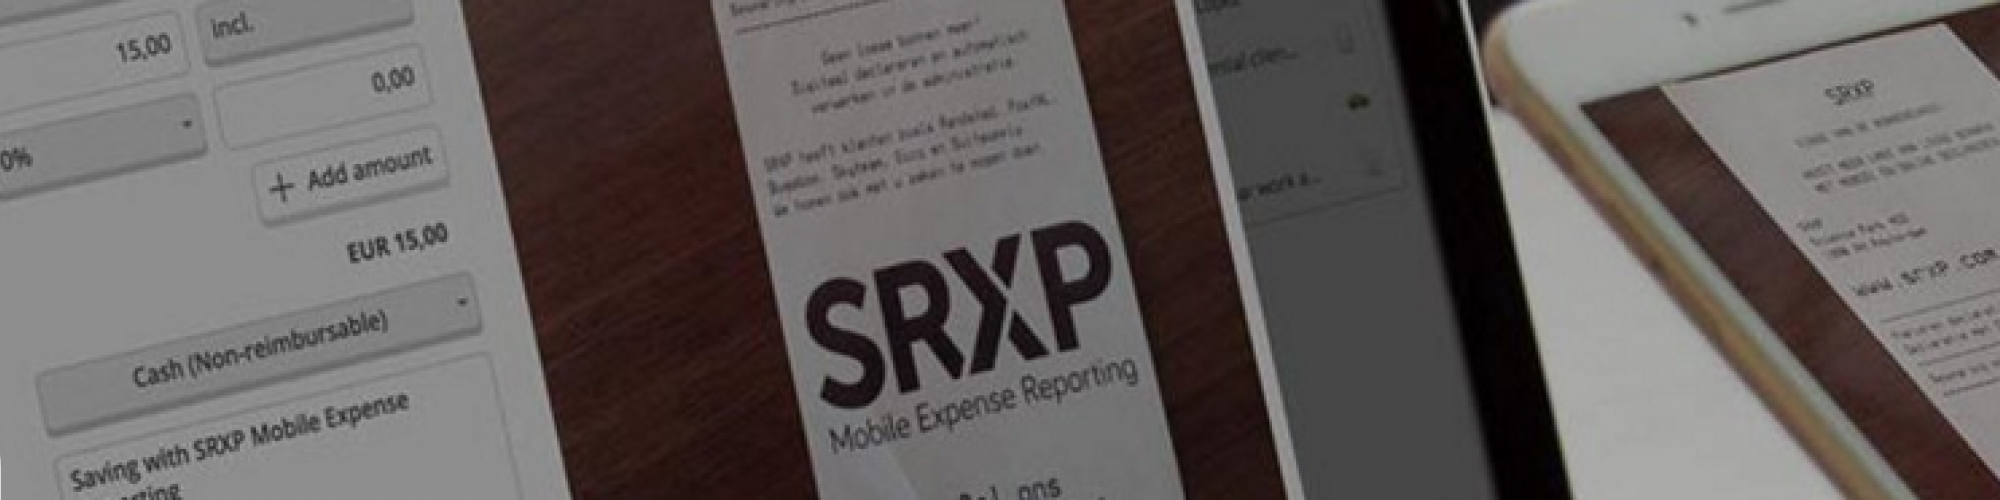 SRXP